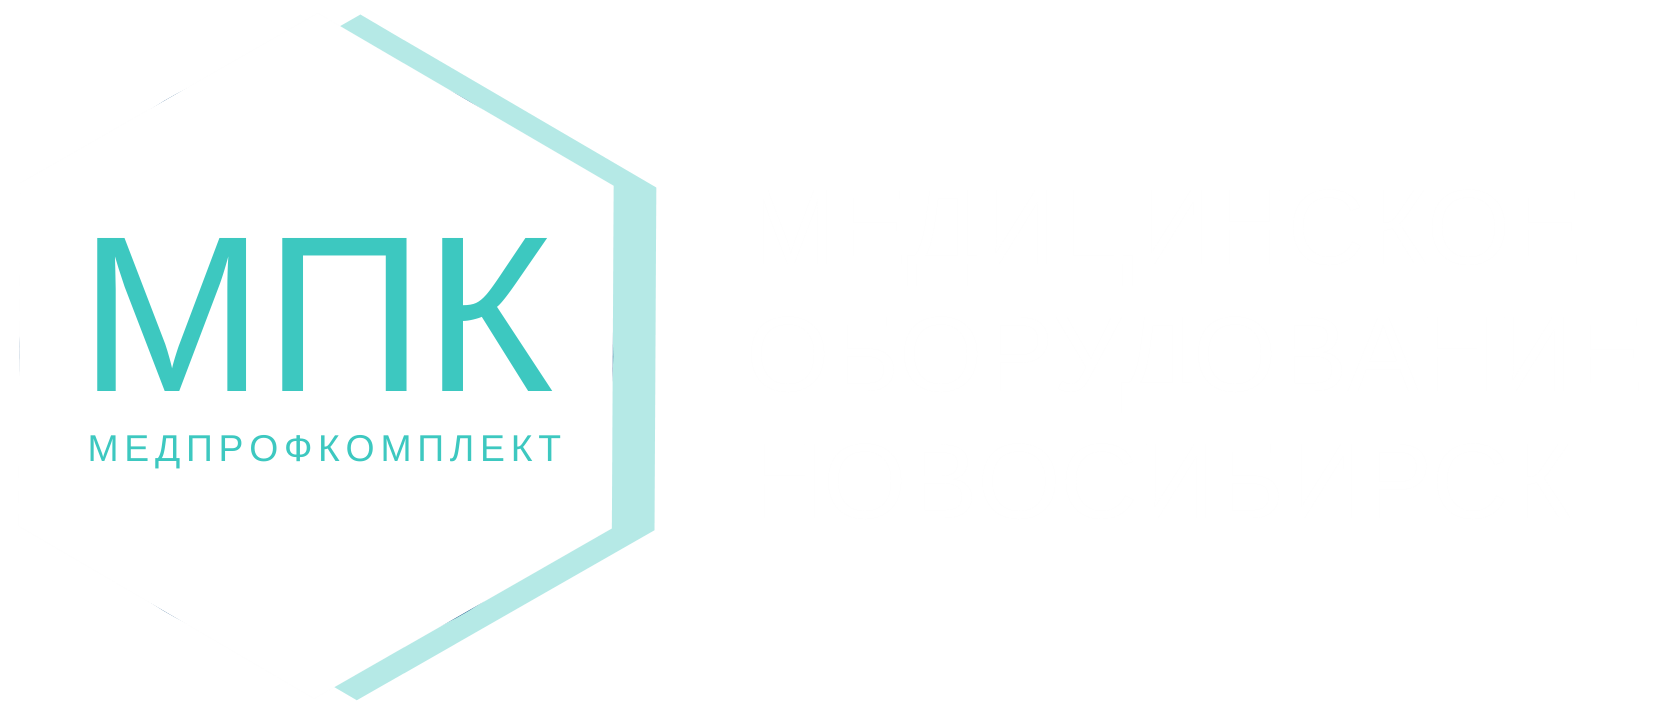 МЕДПРОФКОМПЛЕКТ логотип